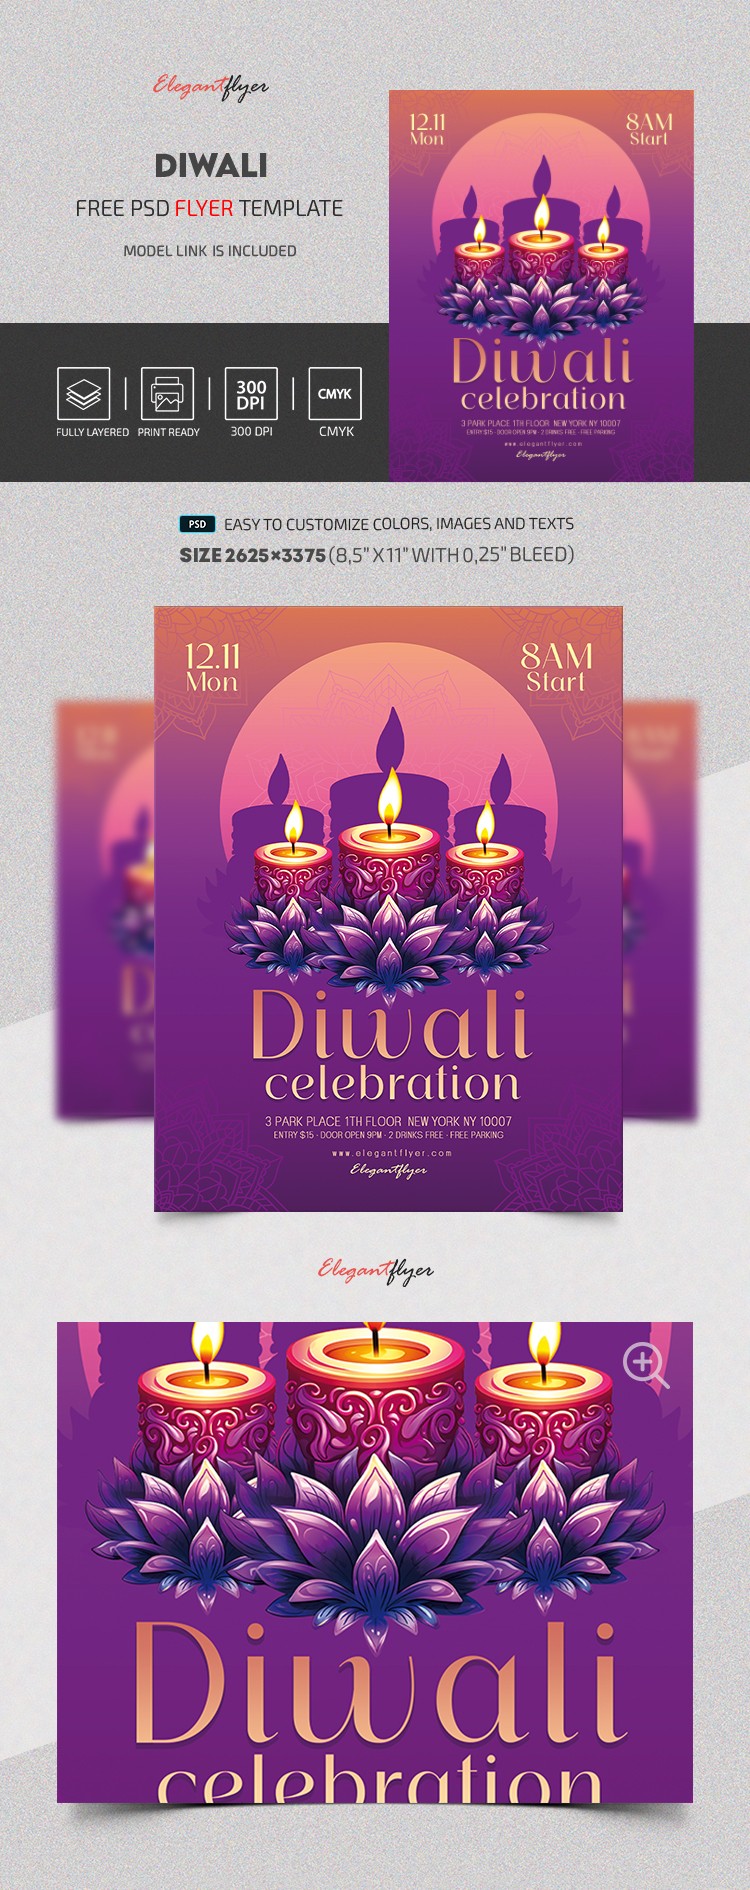 Celebração do Diwali by ElegantFlyer